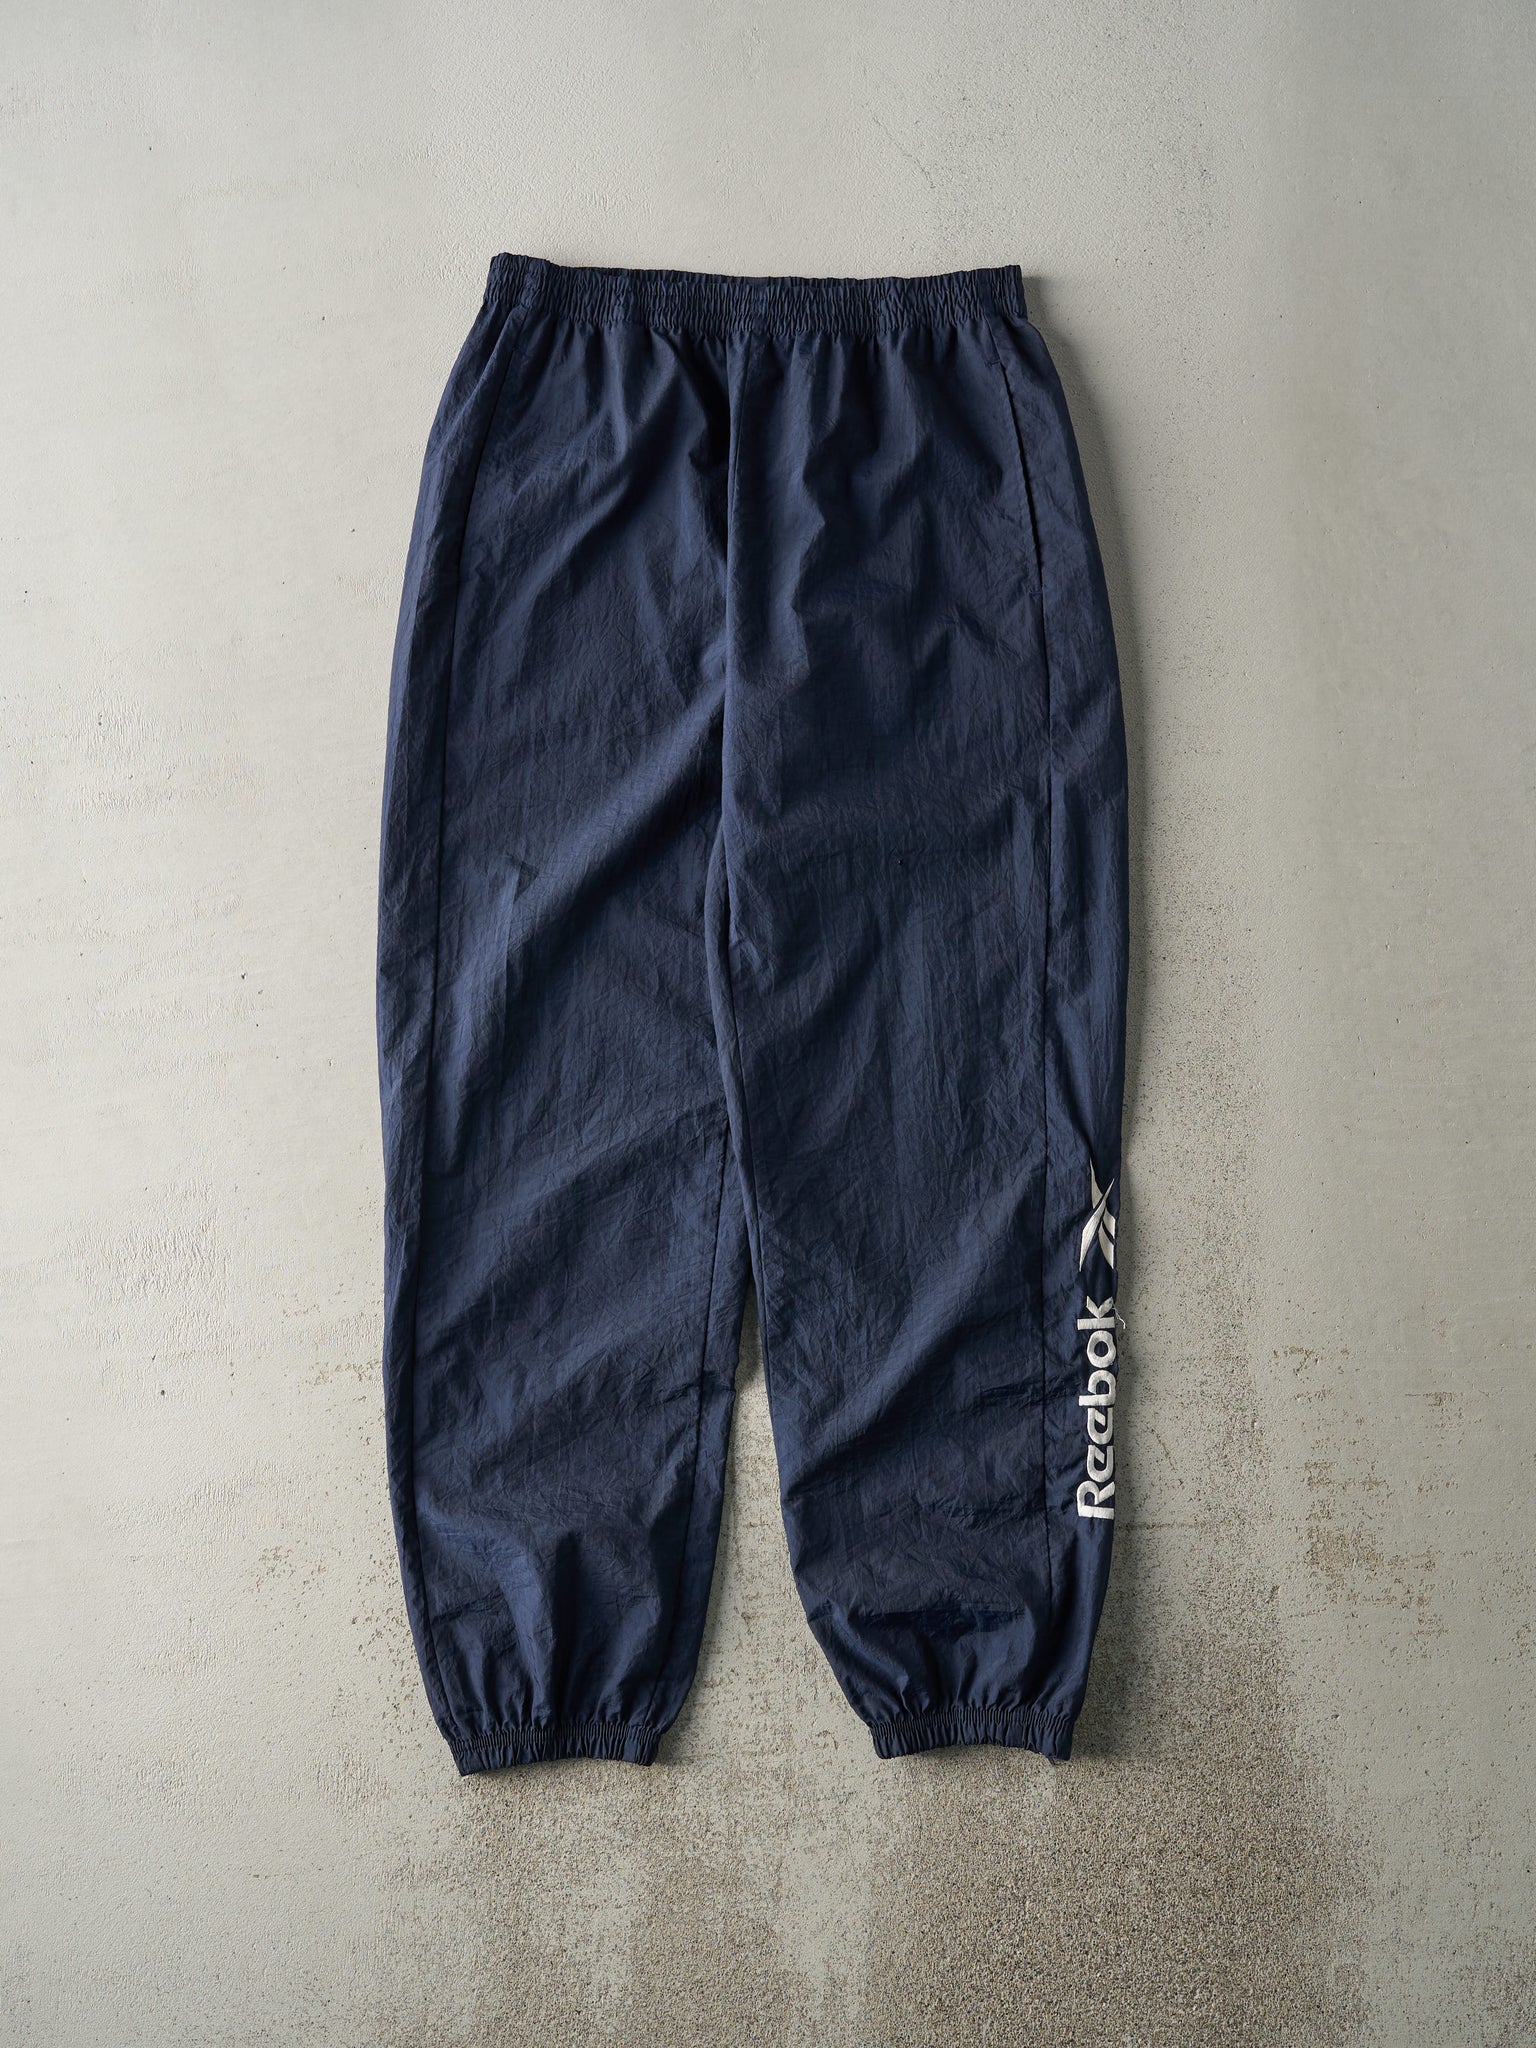 Vintage Y2K Navy Blue Embroidered Reebok Windbreaker Pants (33x31.5)